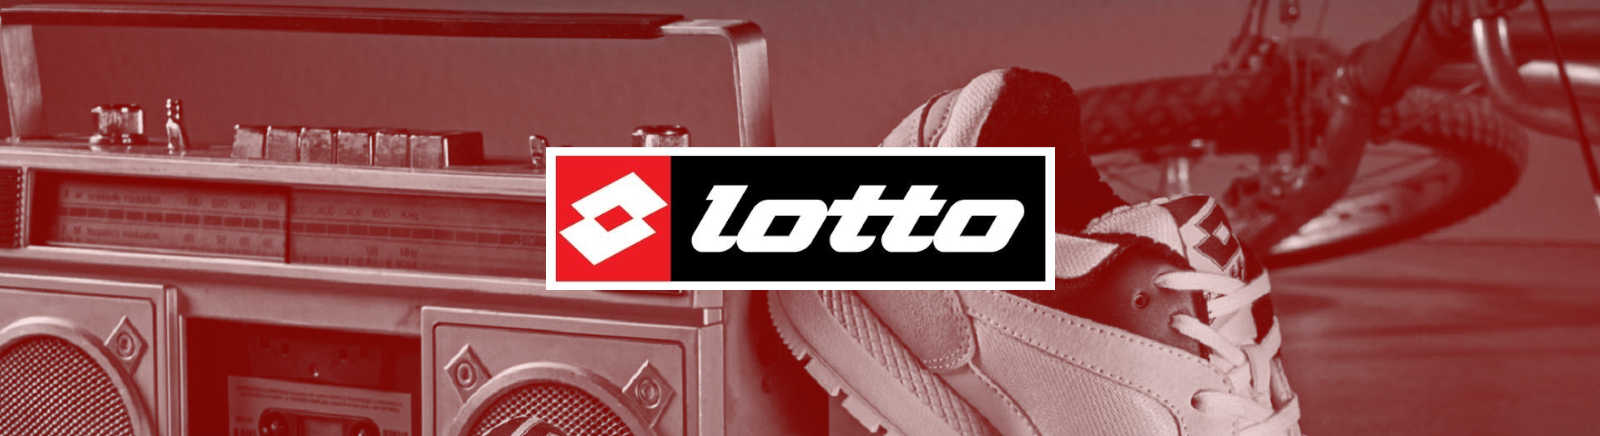 Lotto Herrenschuhe online kaufen im Shop von GISY